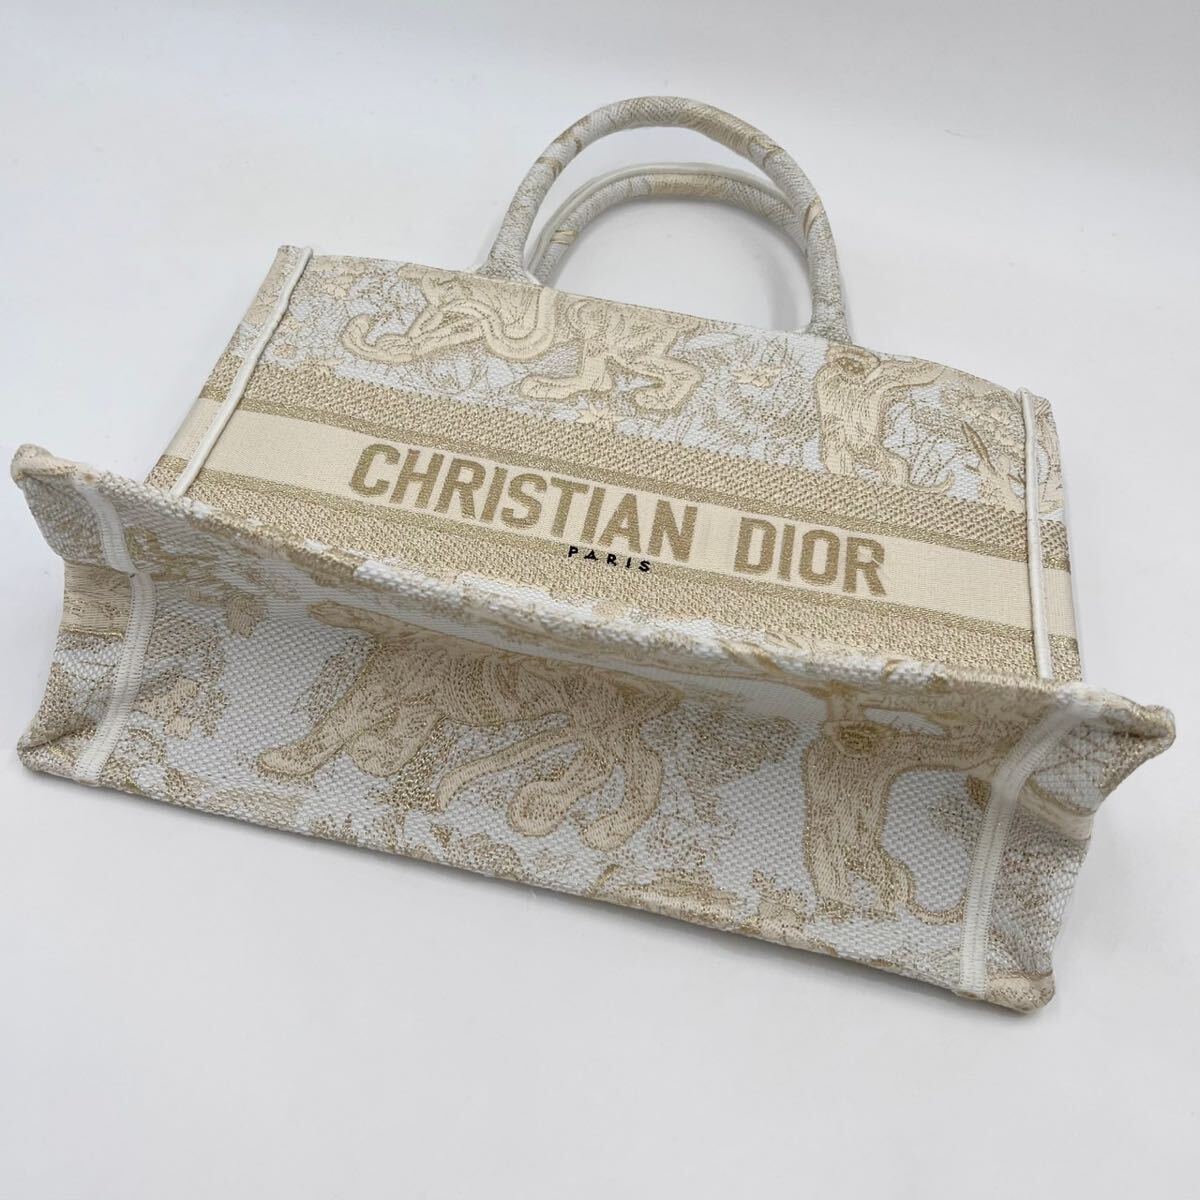 ◆付属品/極美品◆ ディオール ブックトート ミディアム レディース Christian Dior Book Tote オブリーク ロゴ ゴールド 刺繍バッグ_画像8